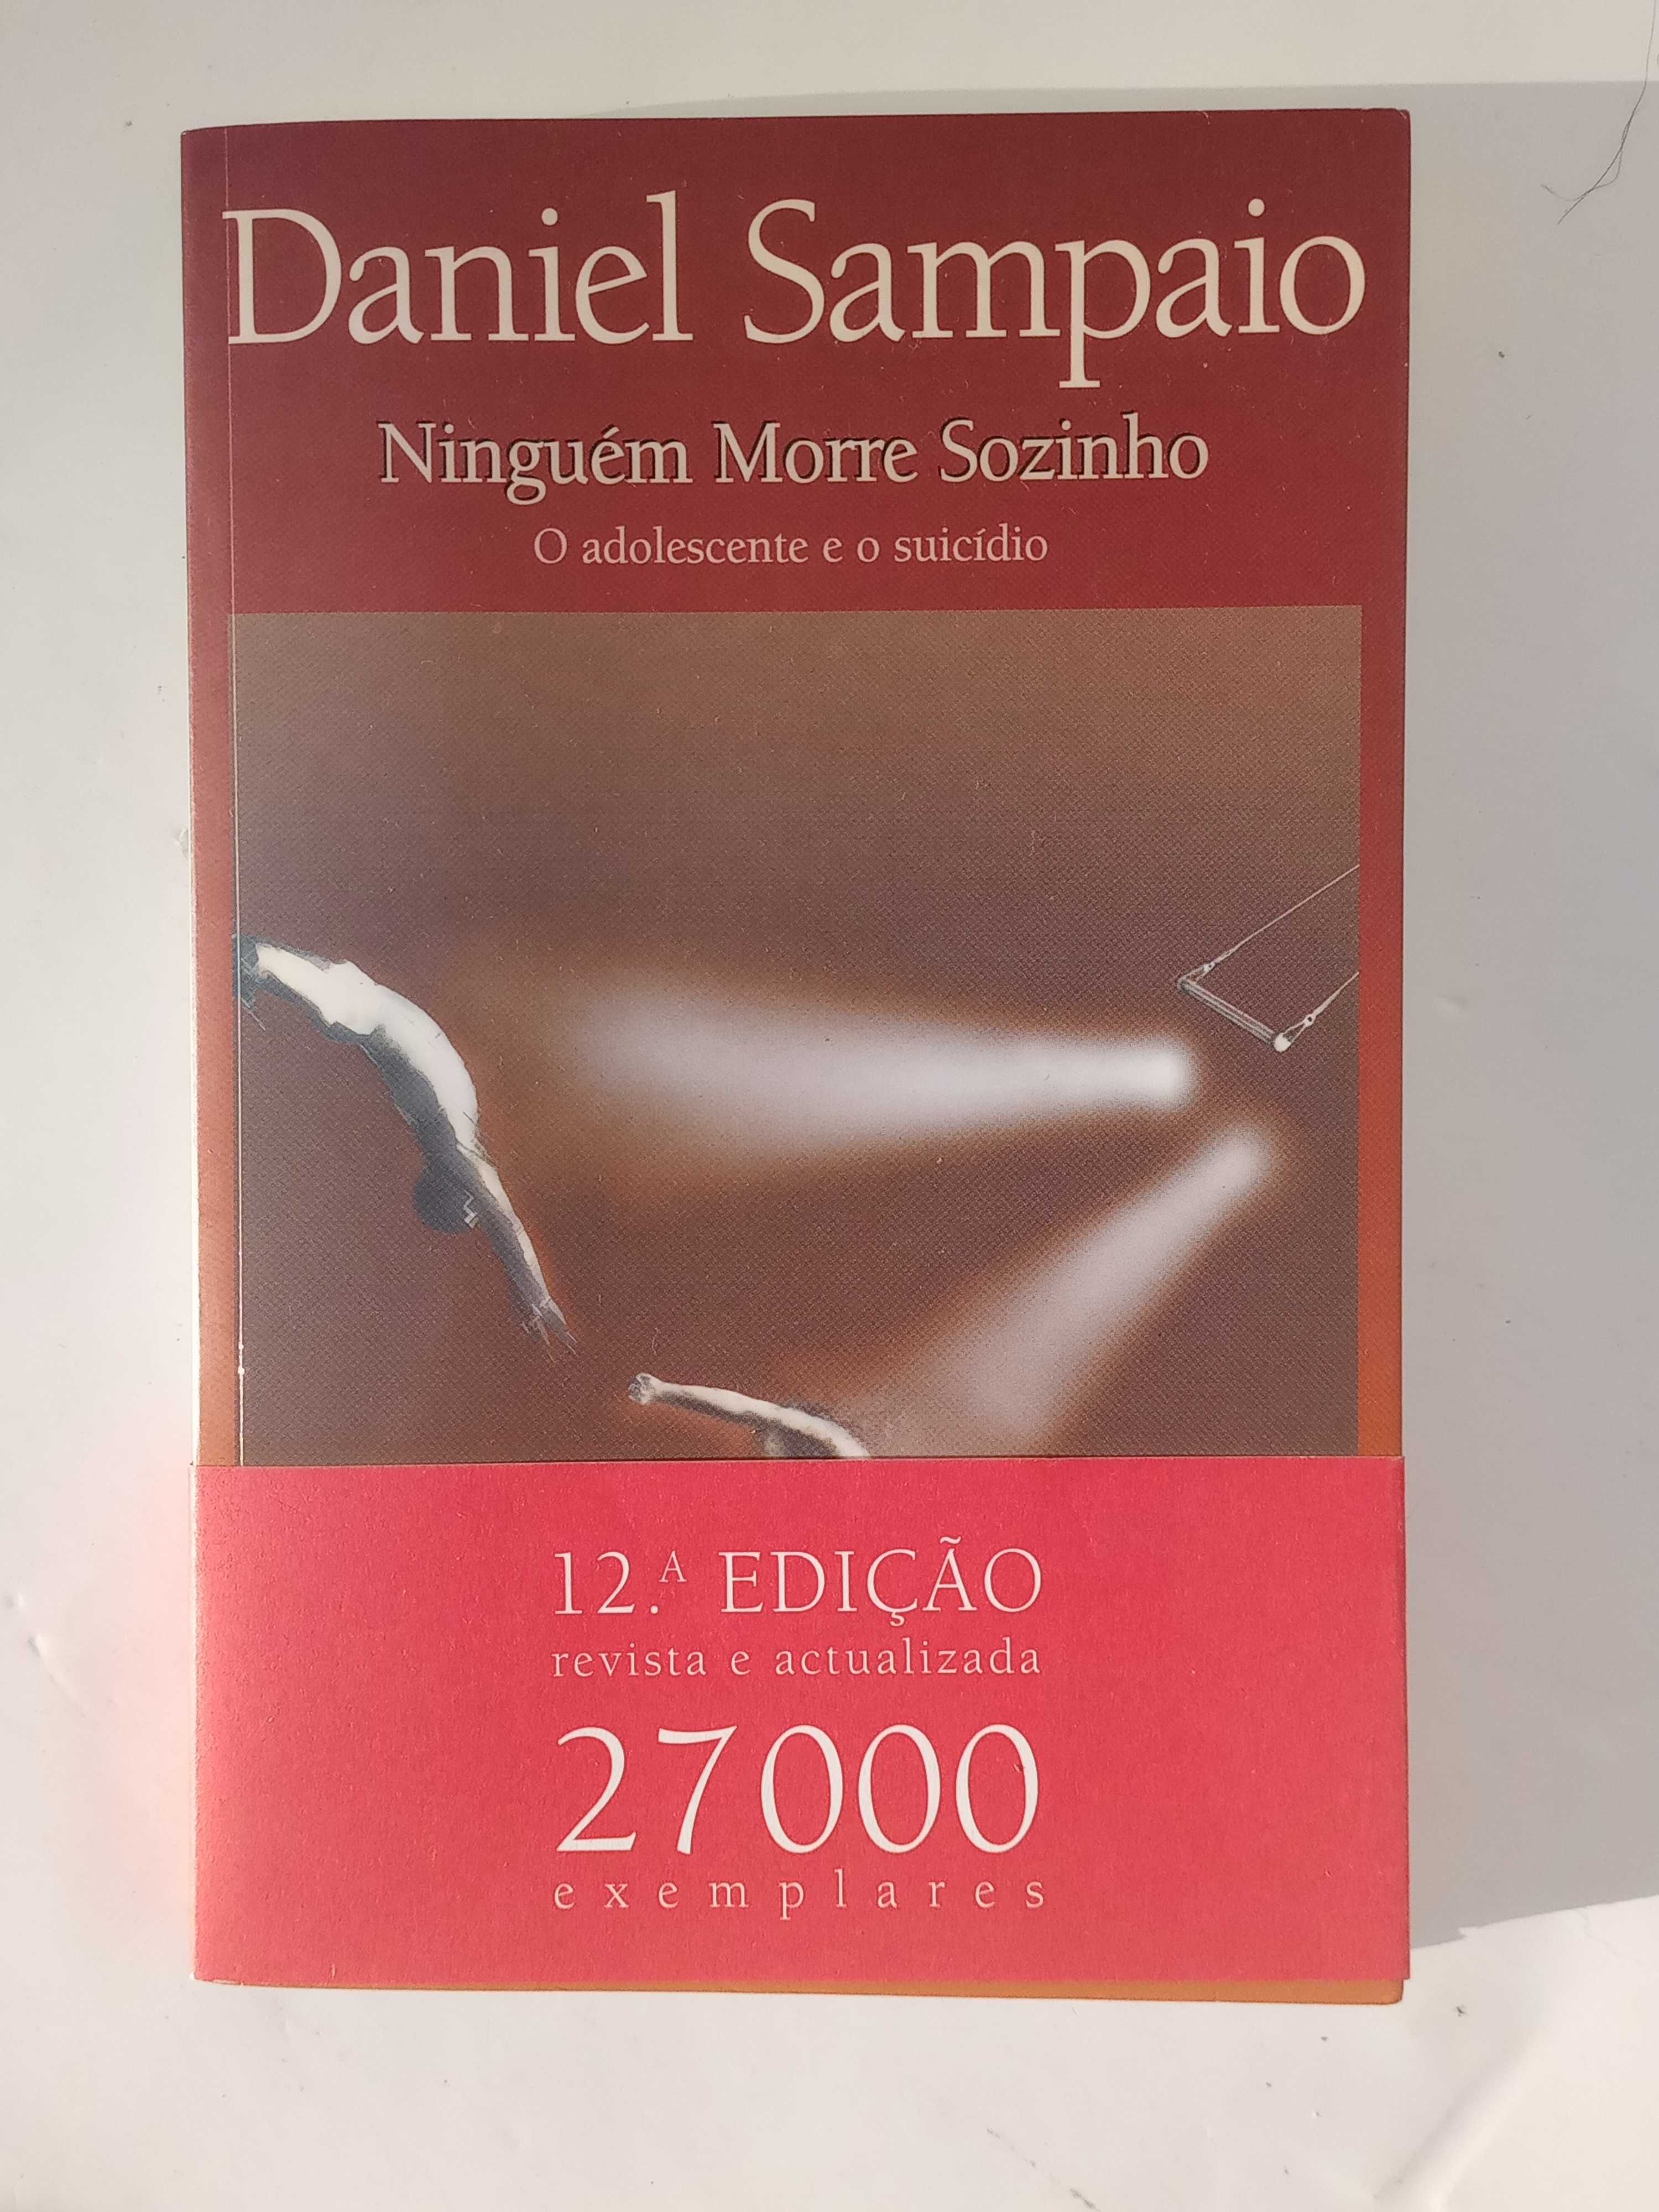 Ninguém Morre Sozinho de Daniel Sampaio